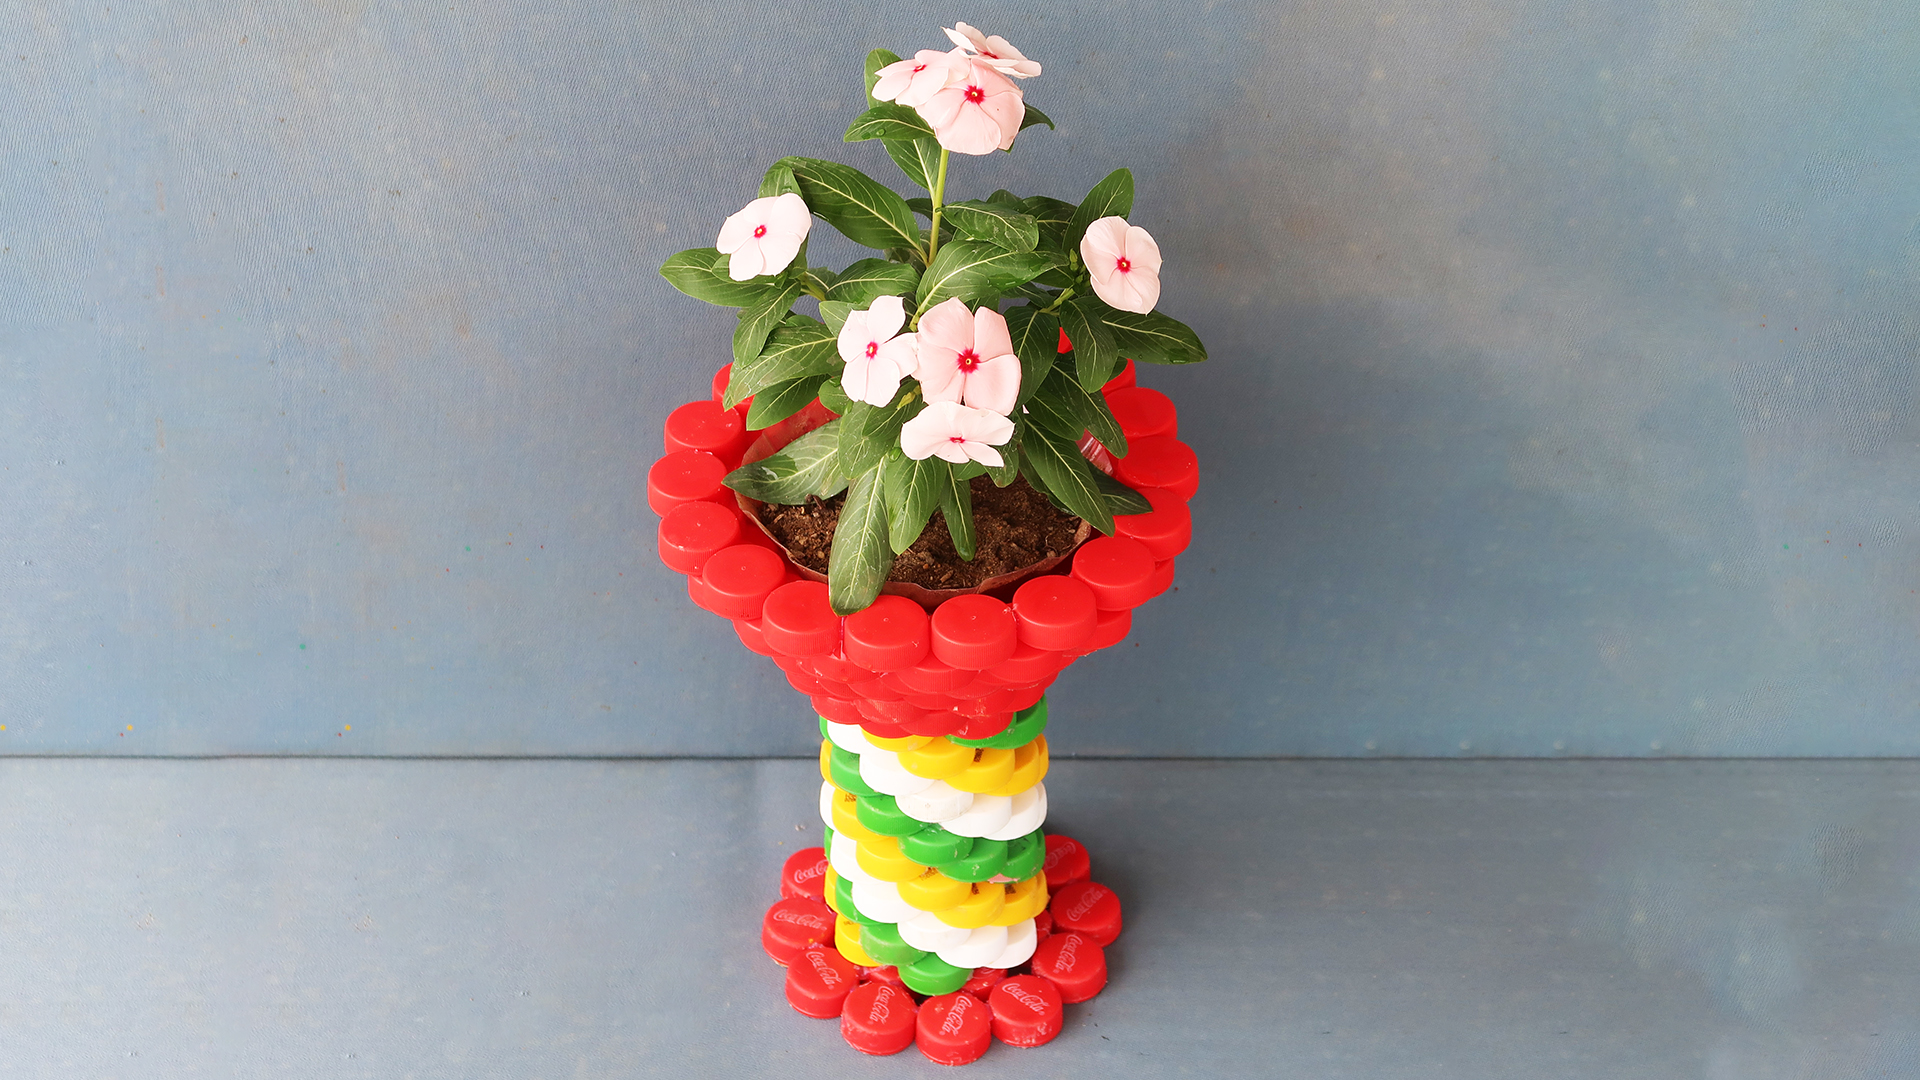 Unique And Creative Flower Pot Idea - Recycle Plastic Bottle Caps For Flower Pots For The Garden